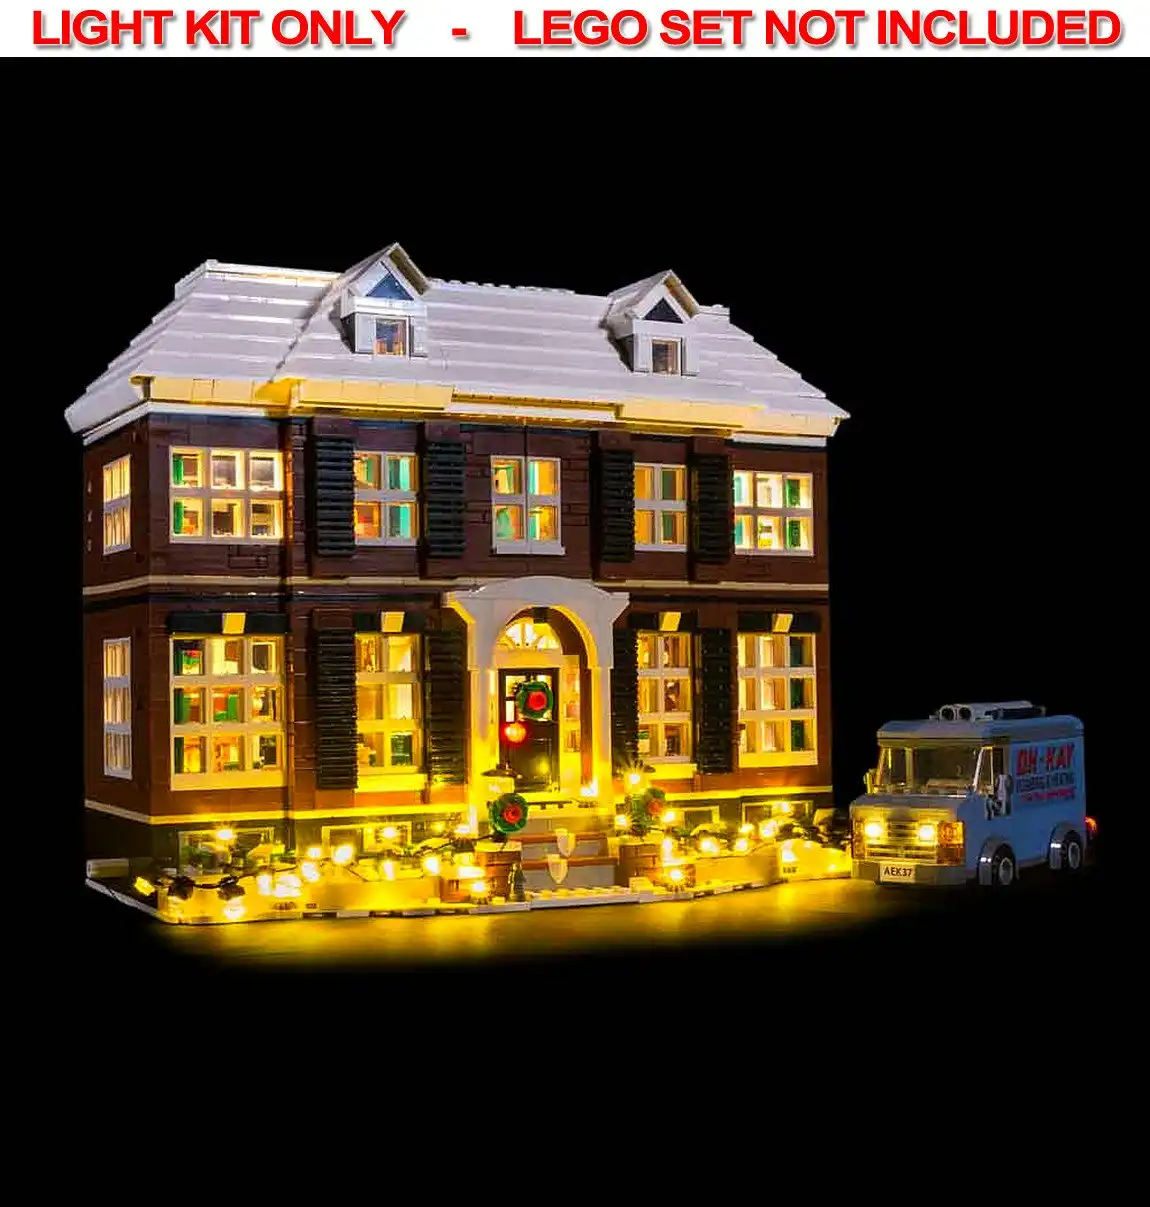 Light My Bricks - LIGHT KIT for LEGO Home Alone 21330